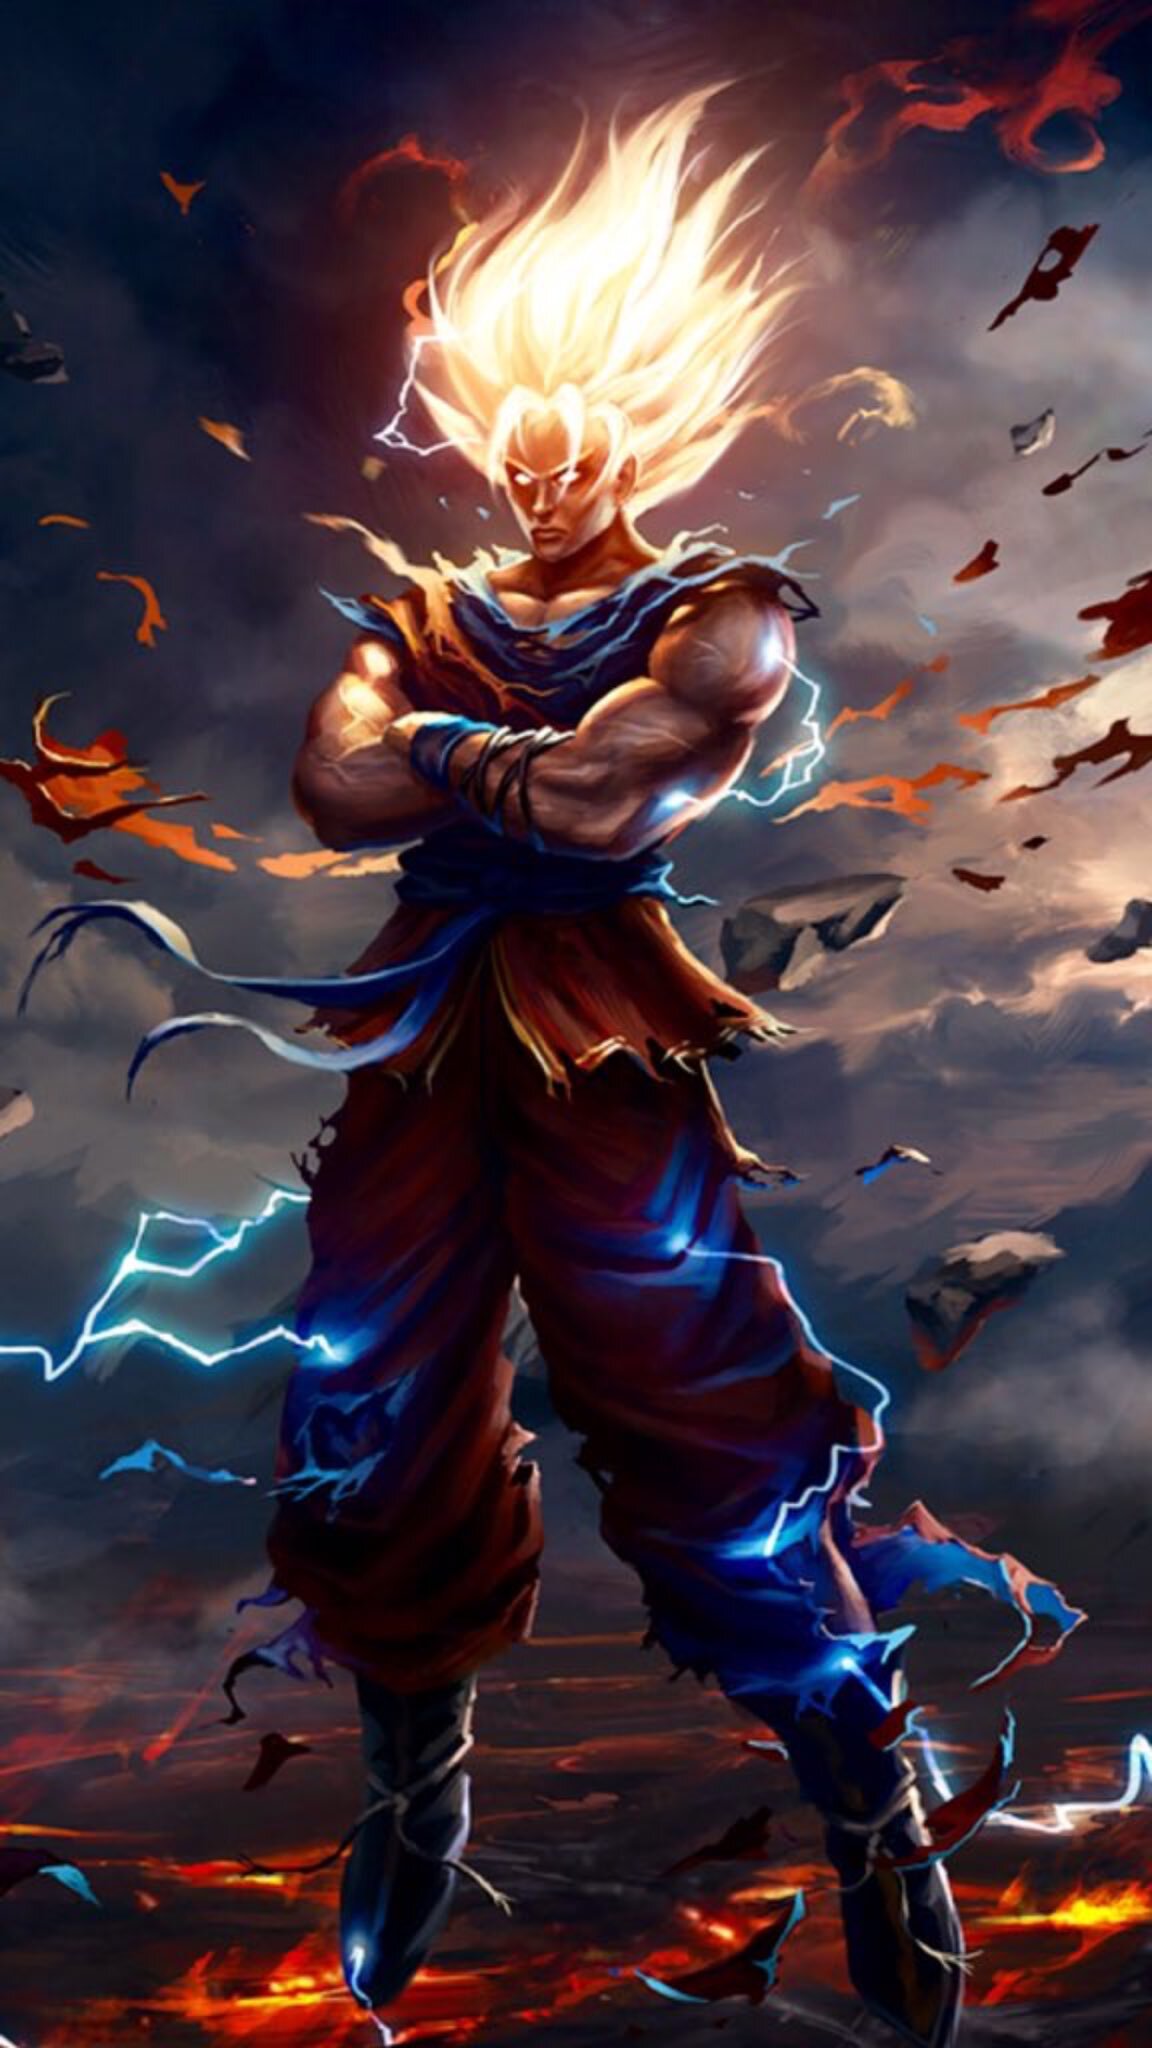 Bức ảnh về Son Goku bản năng vô cực sẽ khiến bạn ngạc nhiên với sức mạnh của anh ta. Chiêm ngưỡng bức ảnh này và cảm nhận sự ảo diệu của một chiến binh siêu cấp trong Dragon Ball.